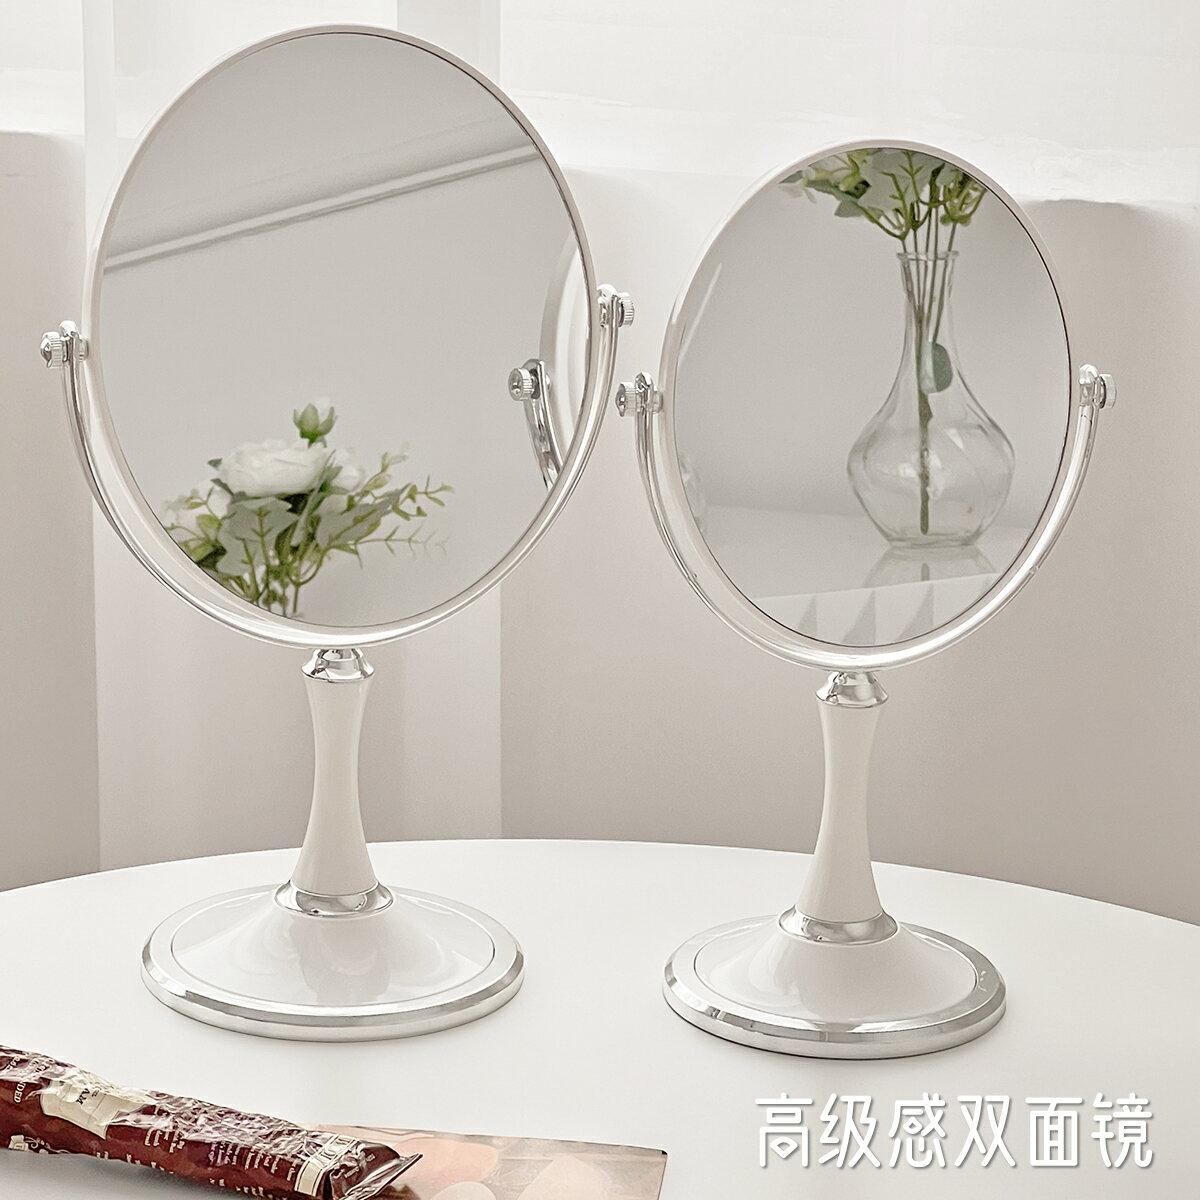 折疊桌鏡簡約ins化妝鏡家用梳妝臺女桌面臺式鏡子學生宿舍臥室雙面放大鏡